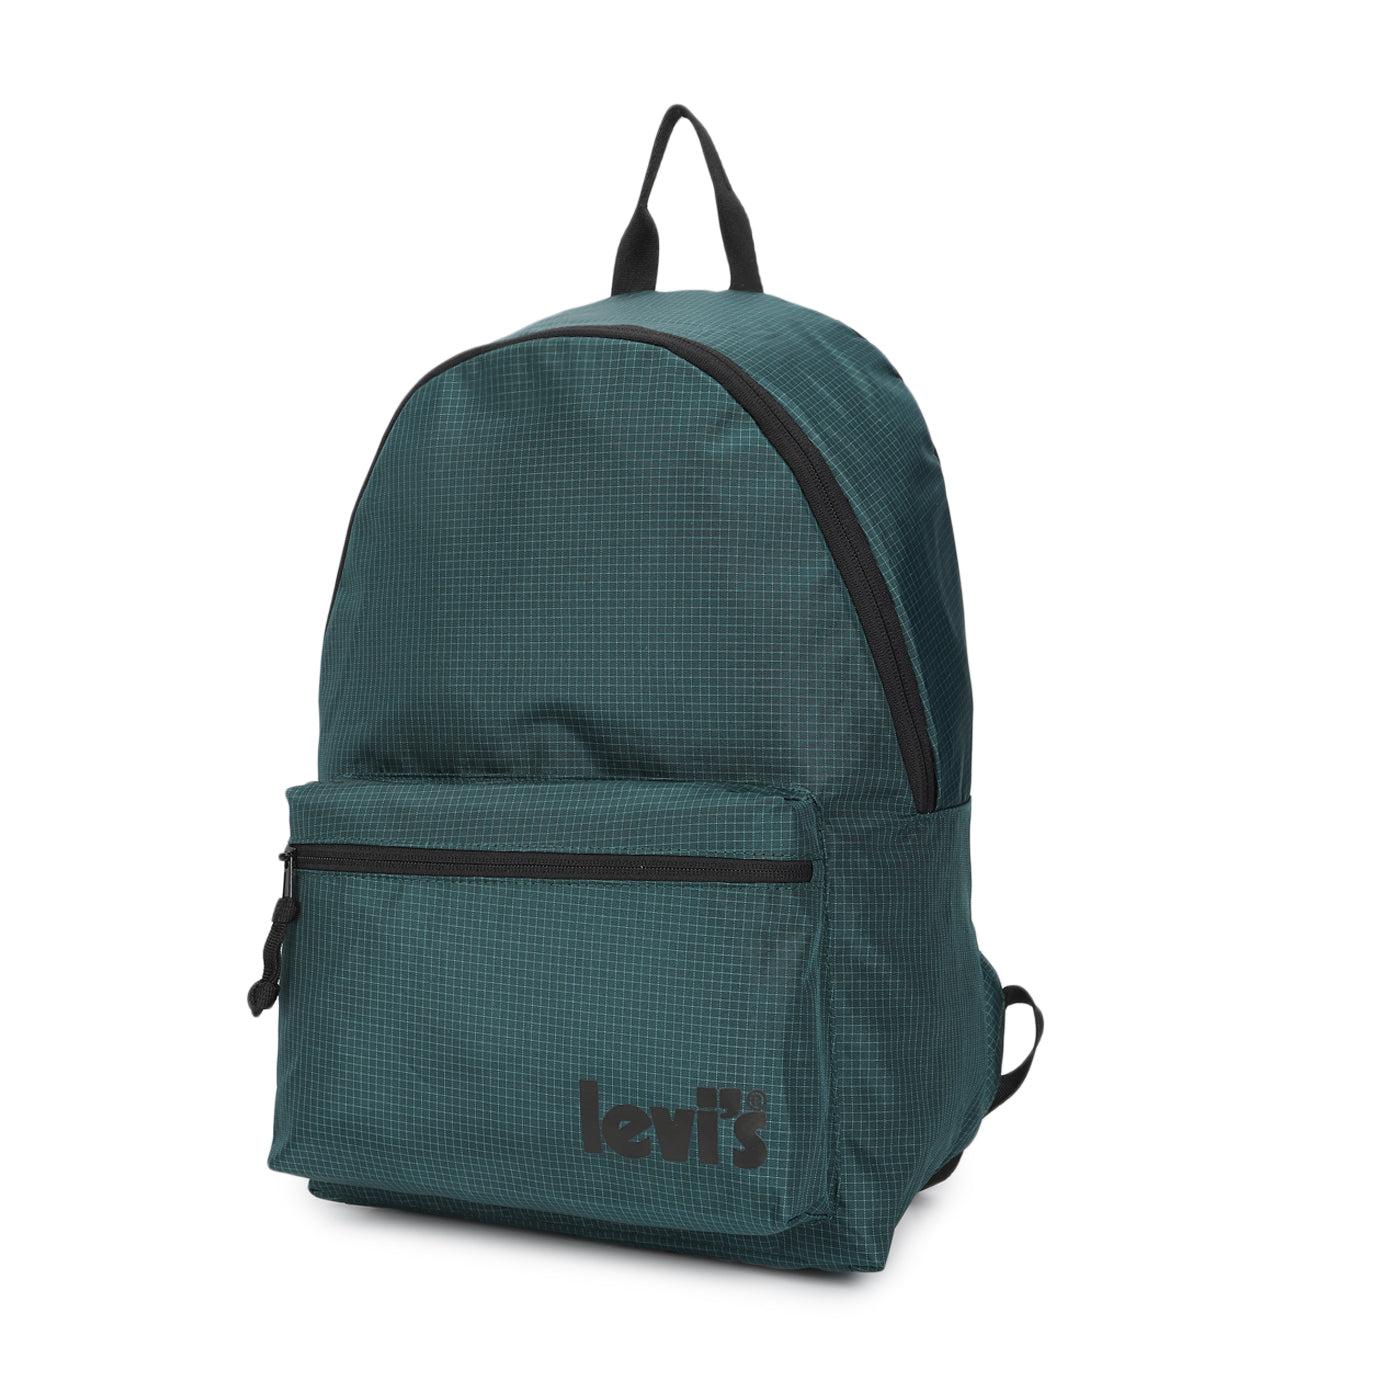 Men's Teal Green Solid Backpack